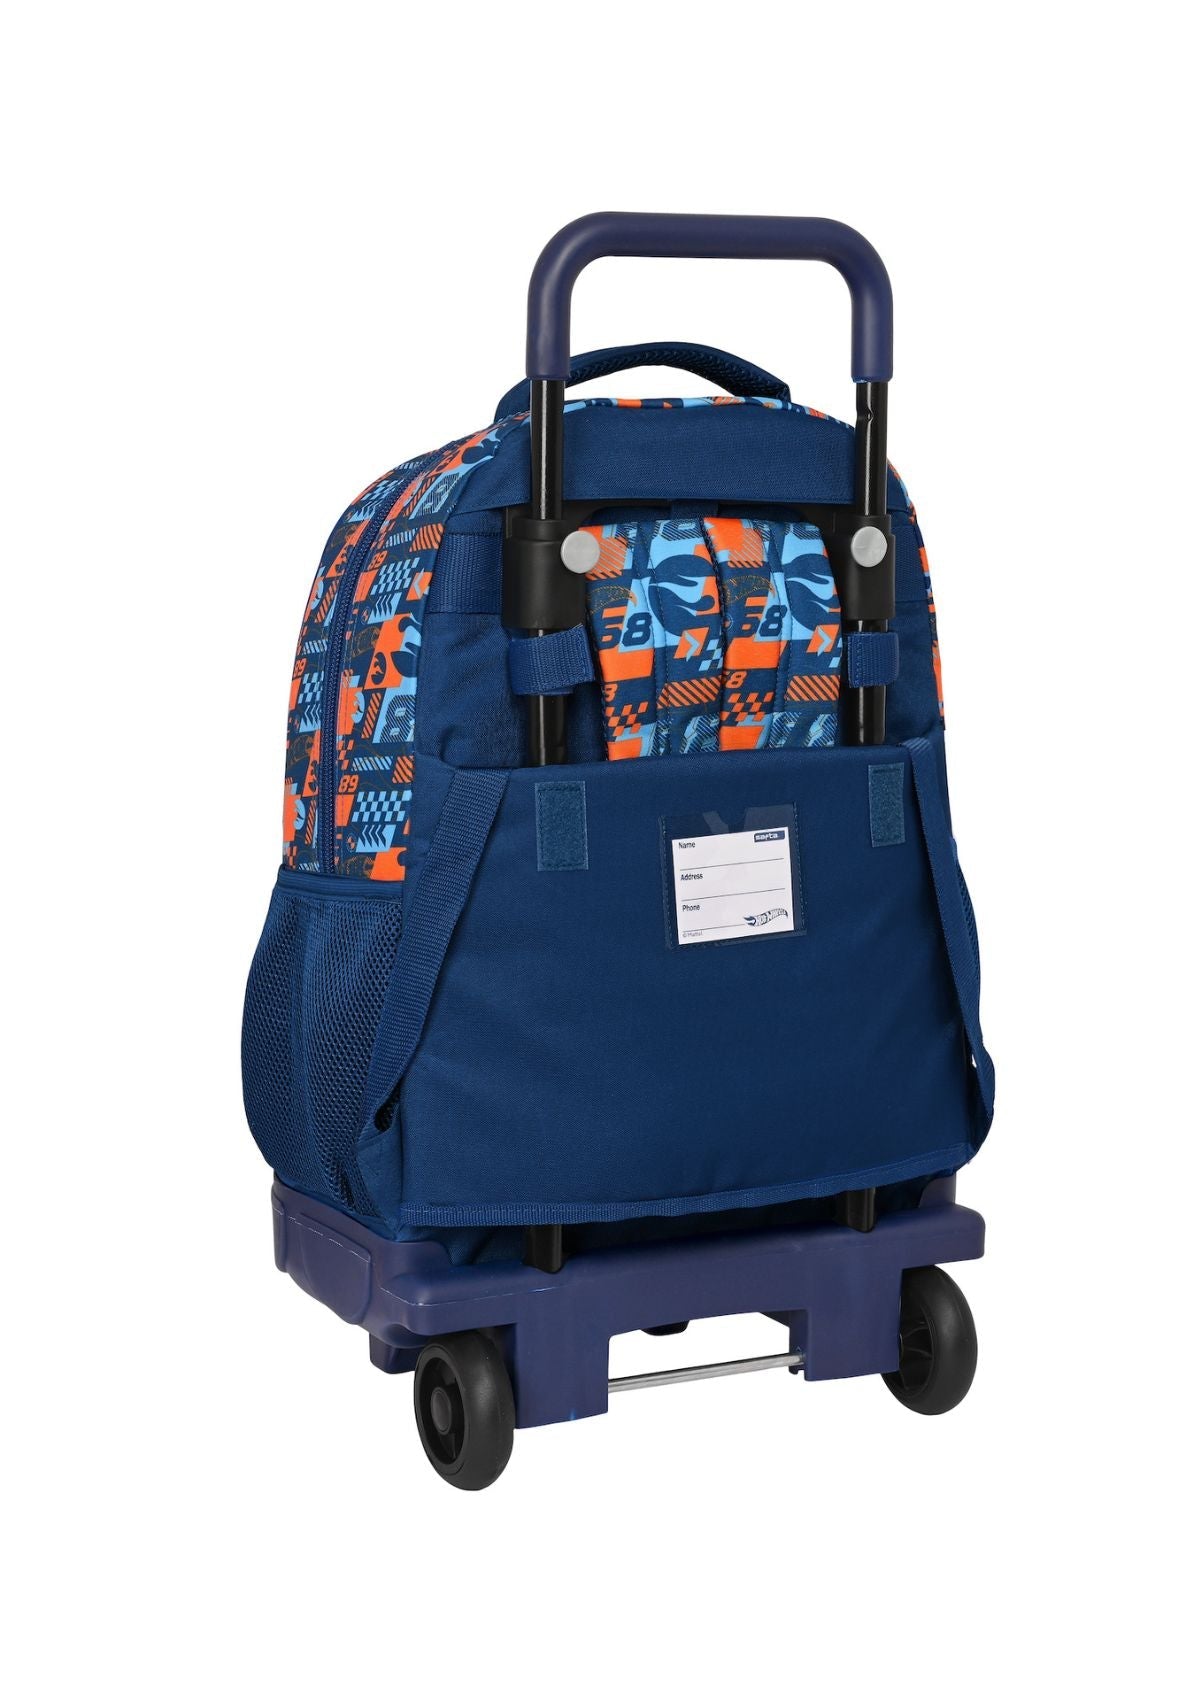 Hot Wheels Wheeled Backpack back